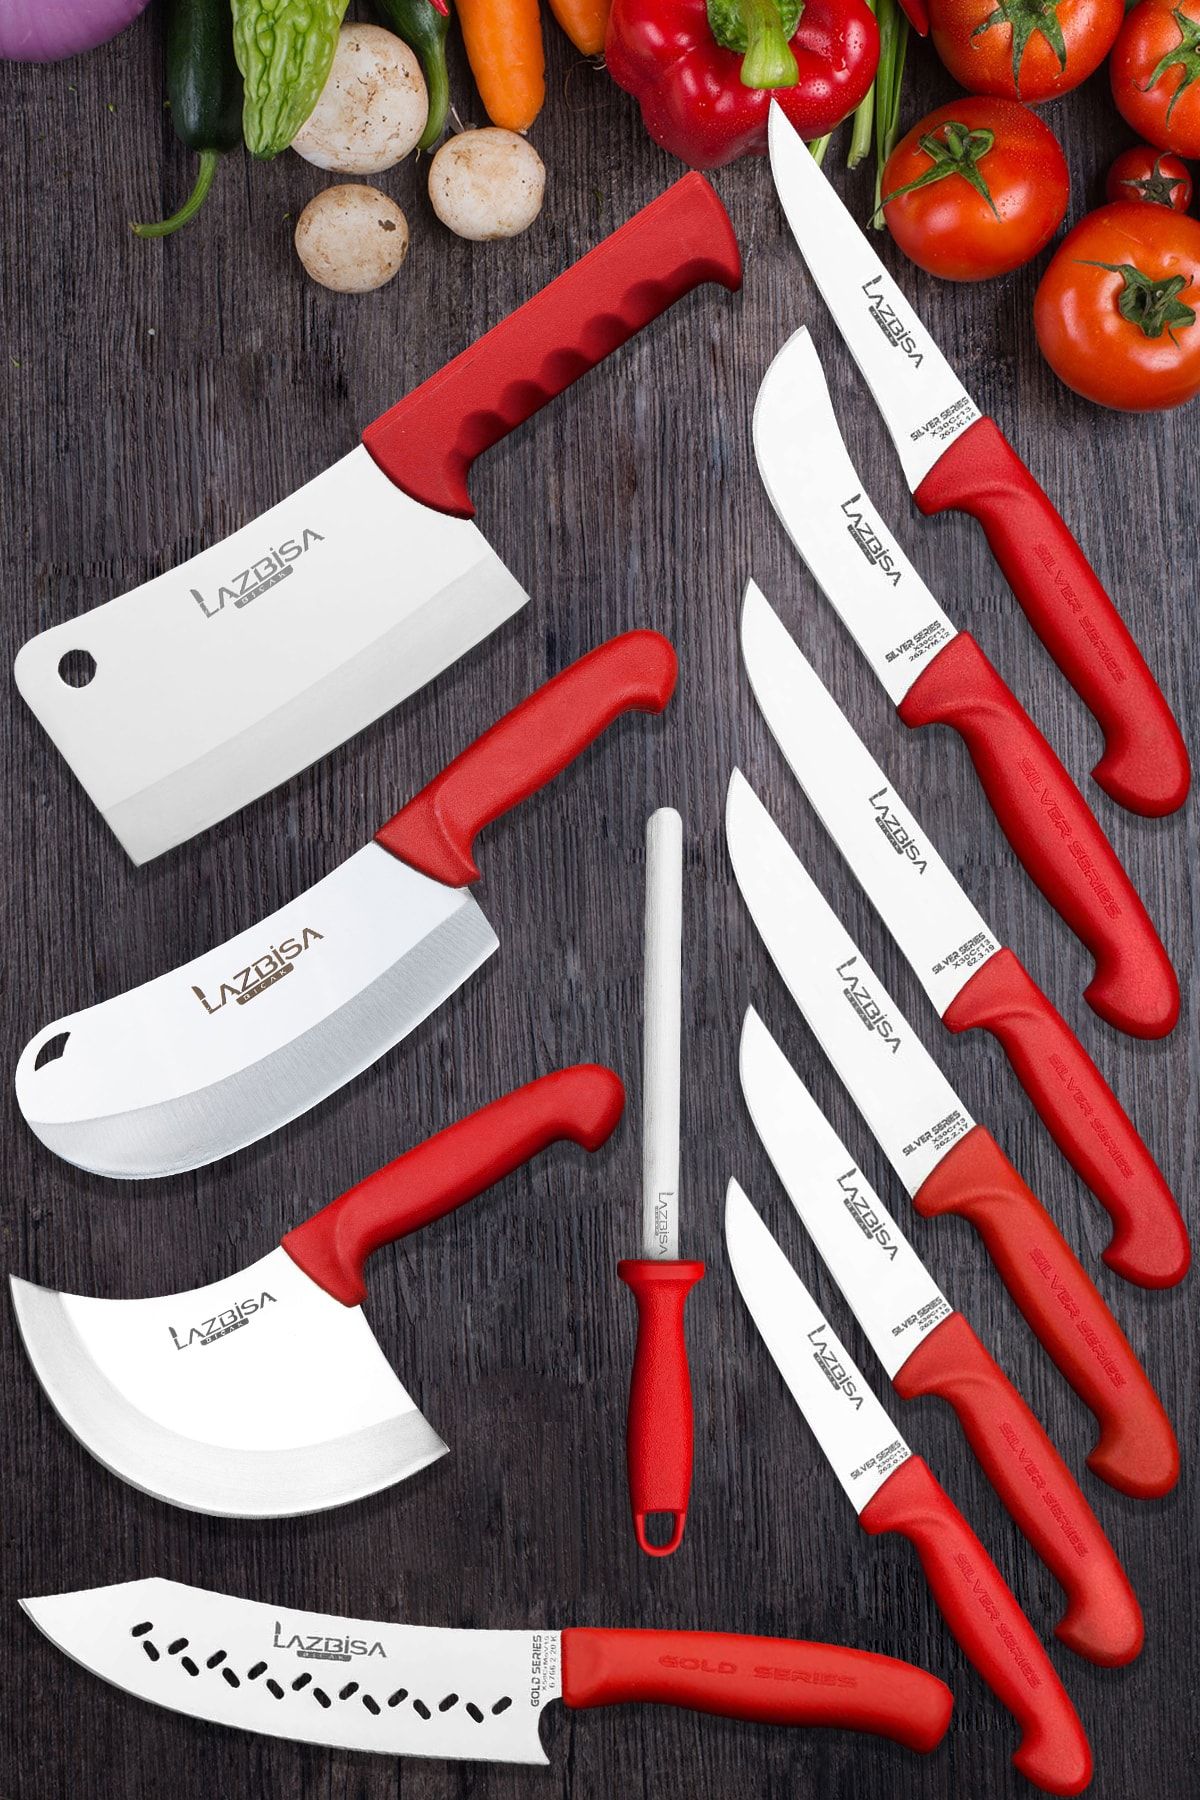 LAZBİSA Silver Profosyonel 11 Parça Mutfak Bıçak Seti Et Ekmek Sebze Meyve Soğan Börek Şef Bıçağı